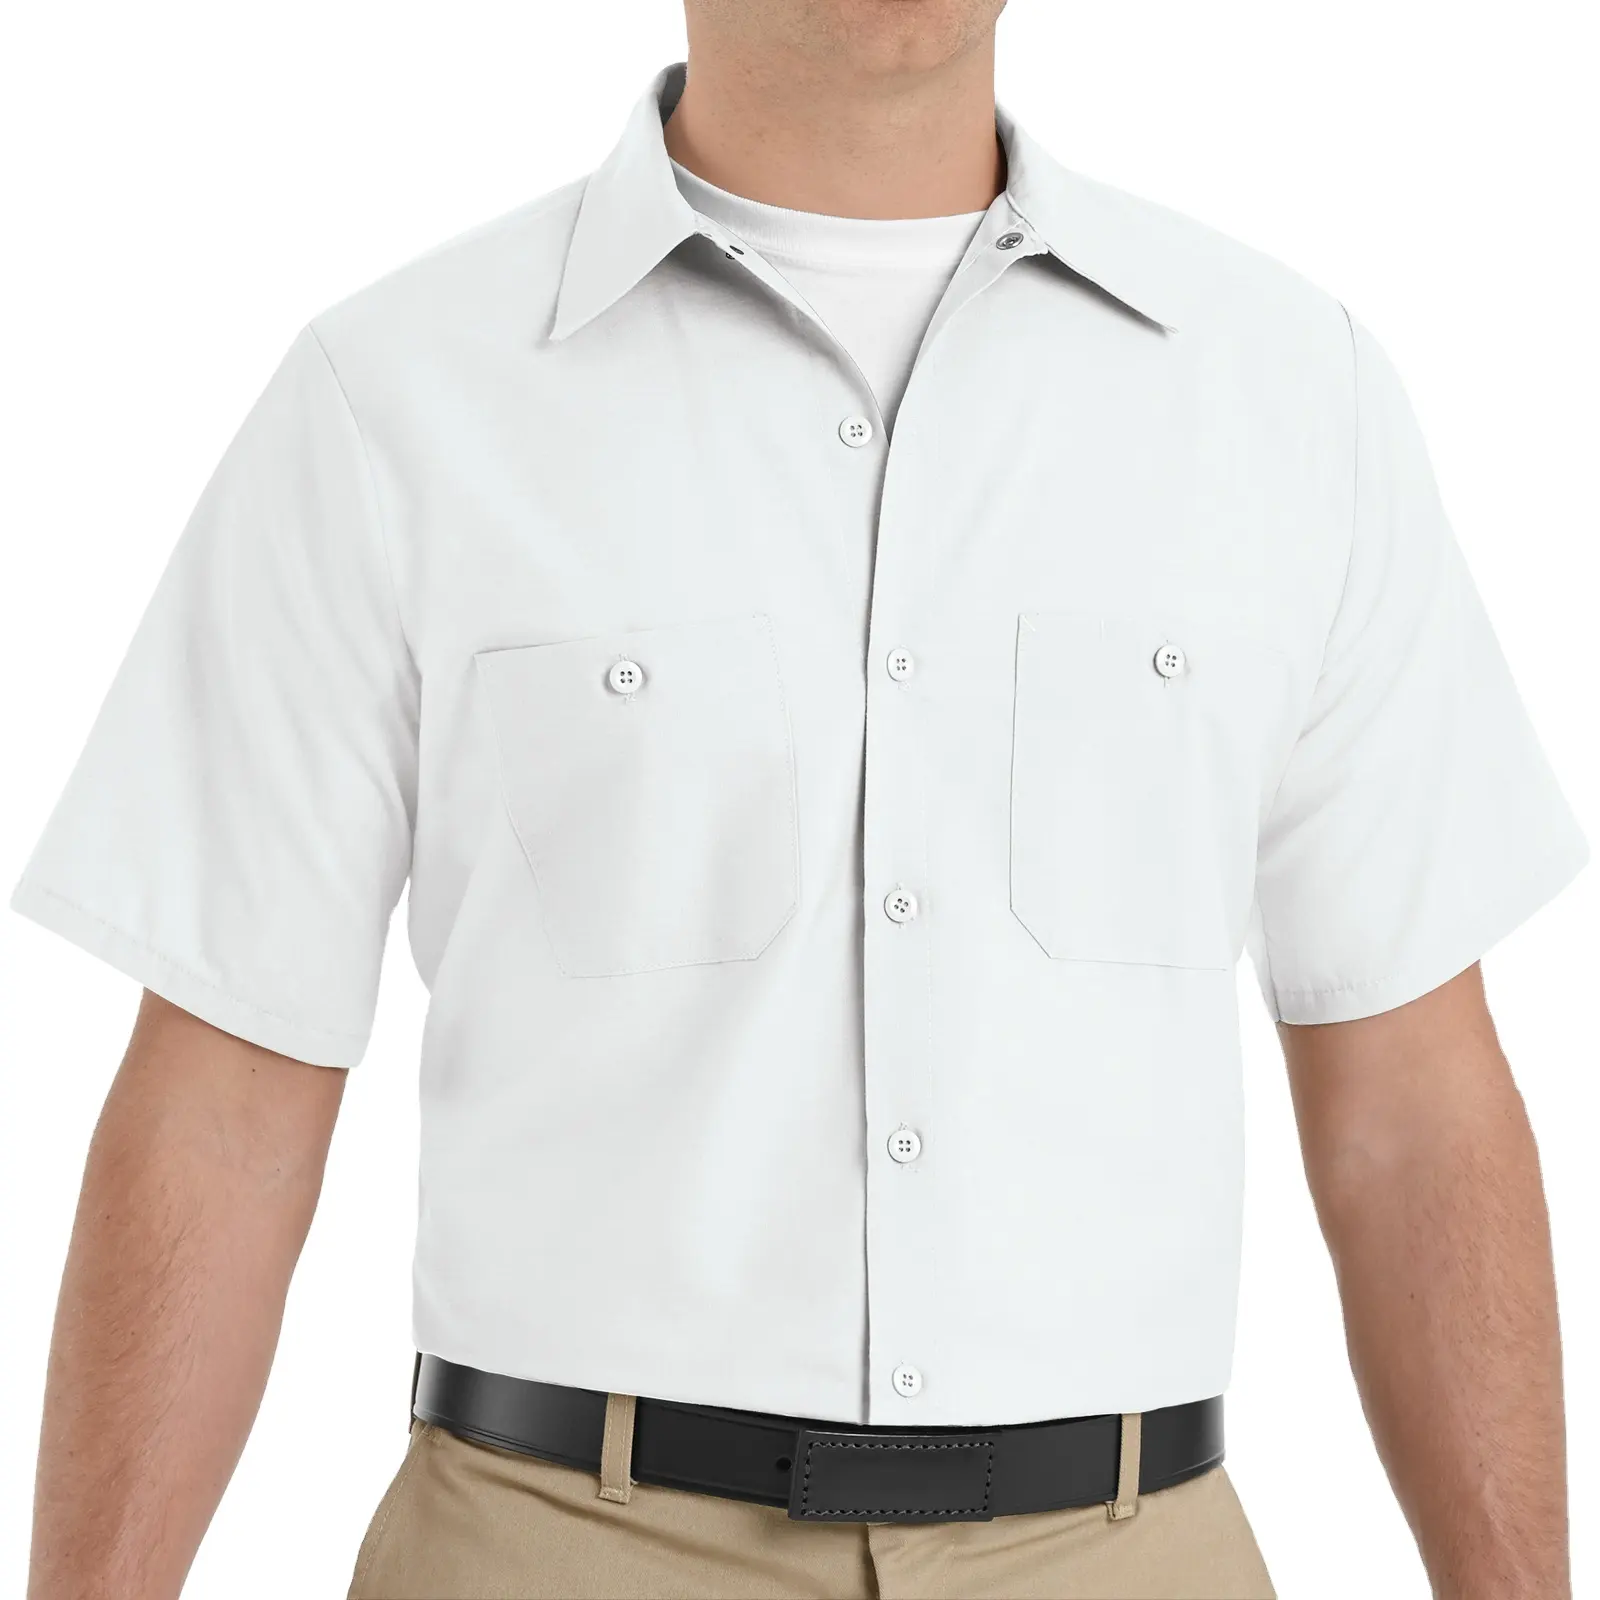 Camisa de trabalho 100% algodão barata com botões de flanela e seda inteligente listra grande e alta estilo trabalho com listras para trabalho comercial